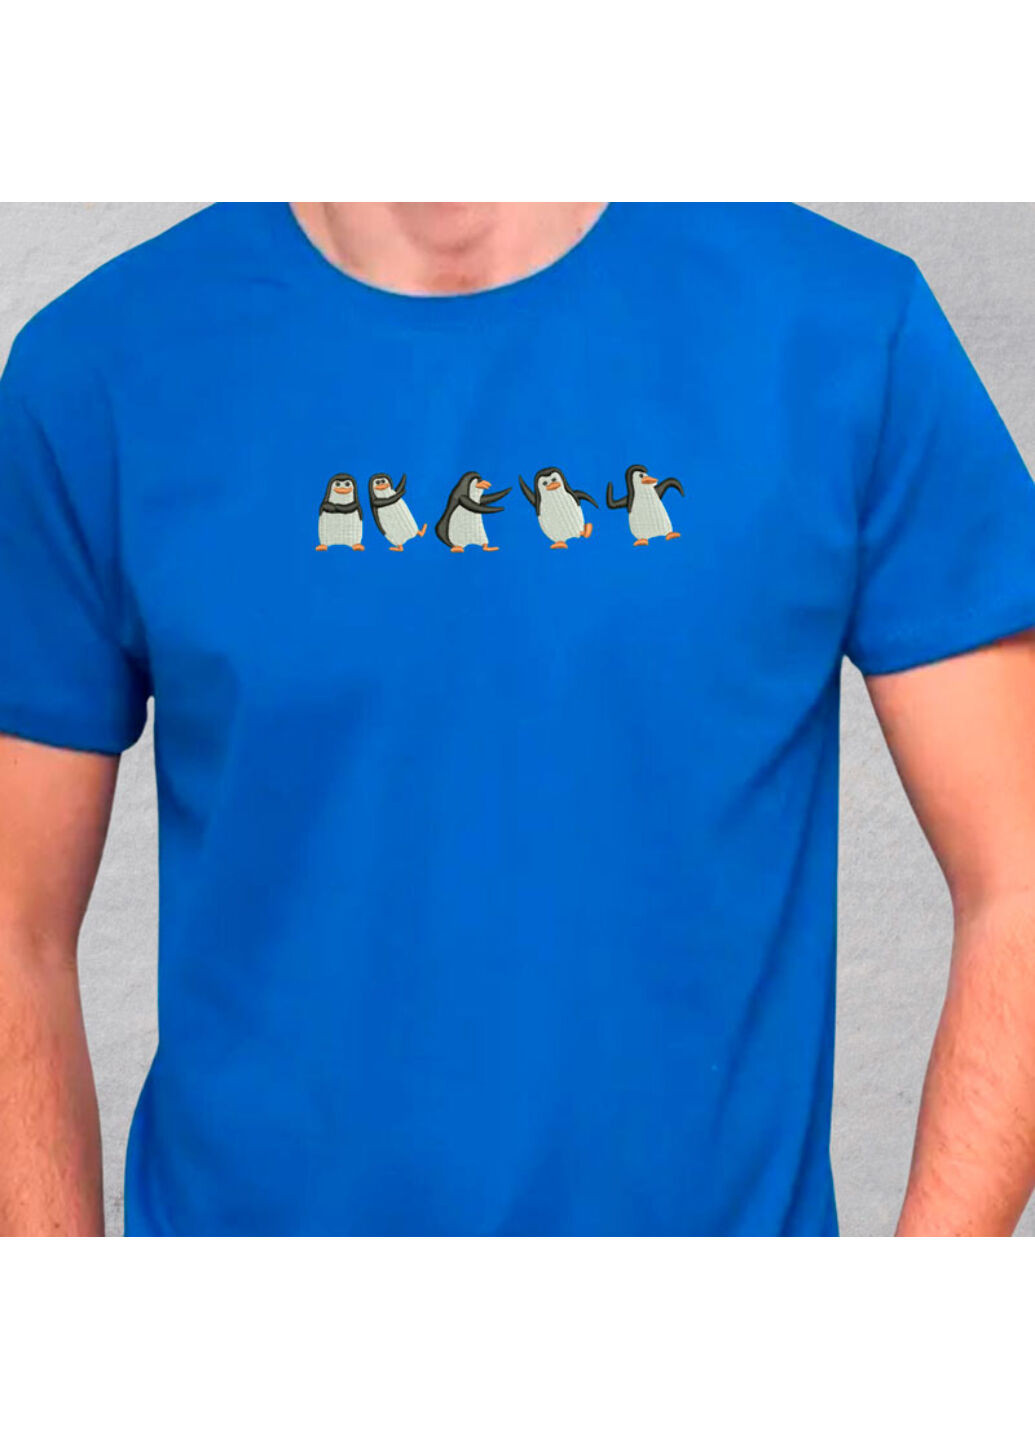 Синяя футболка с вышивкой пингвинов 01-3 мужская синий l No Brand